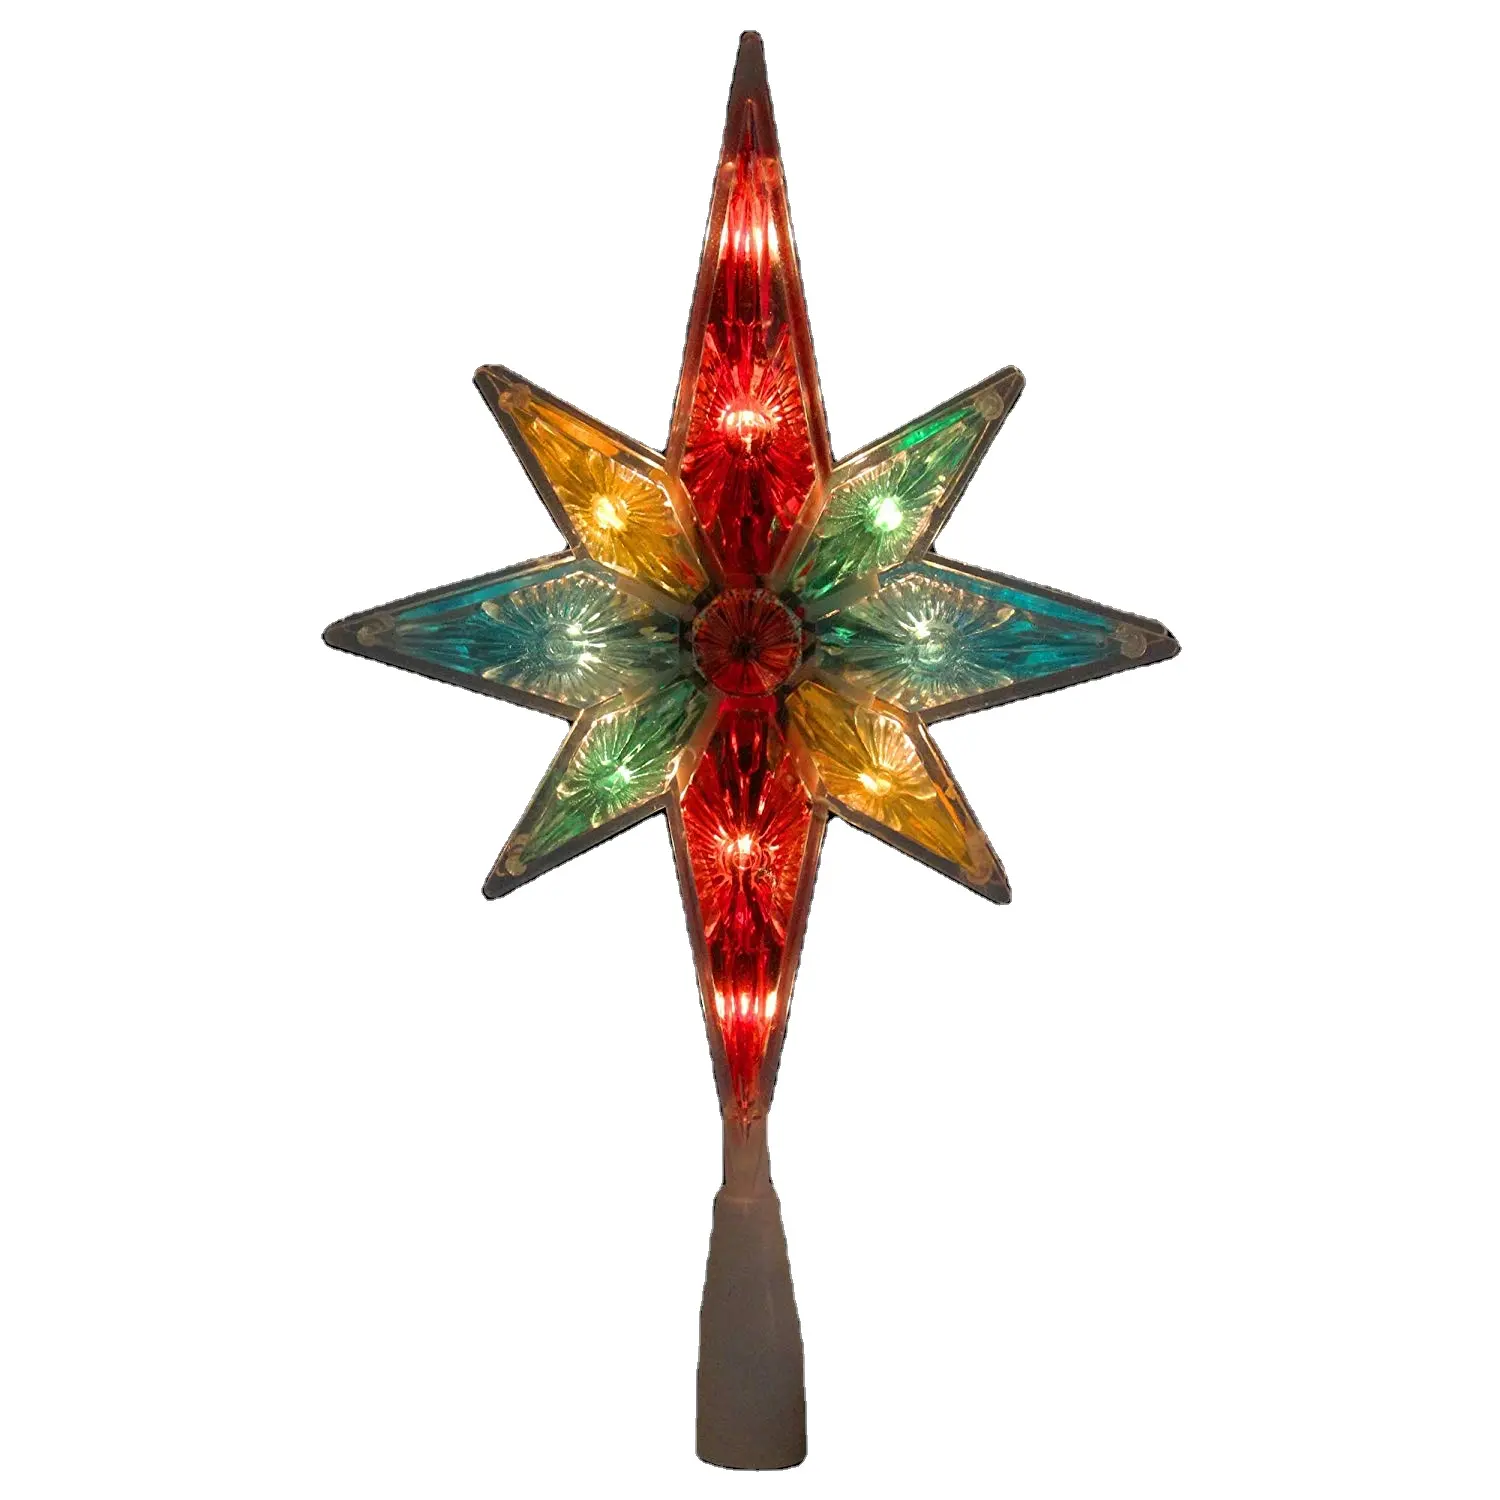 Adorno de árbol de Navidad de 11 "UL, Estrella facetada multicolor de Belén, con 10 Luces